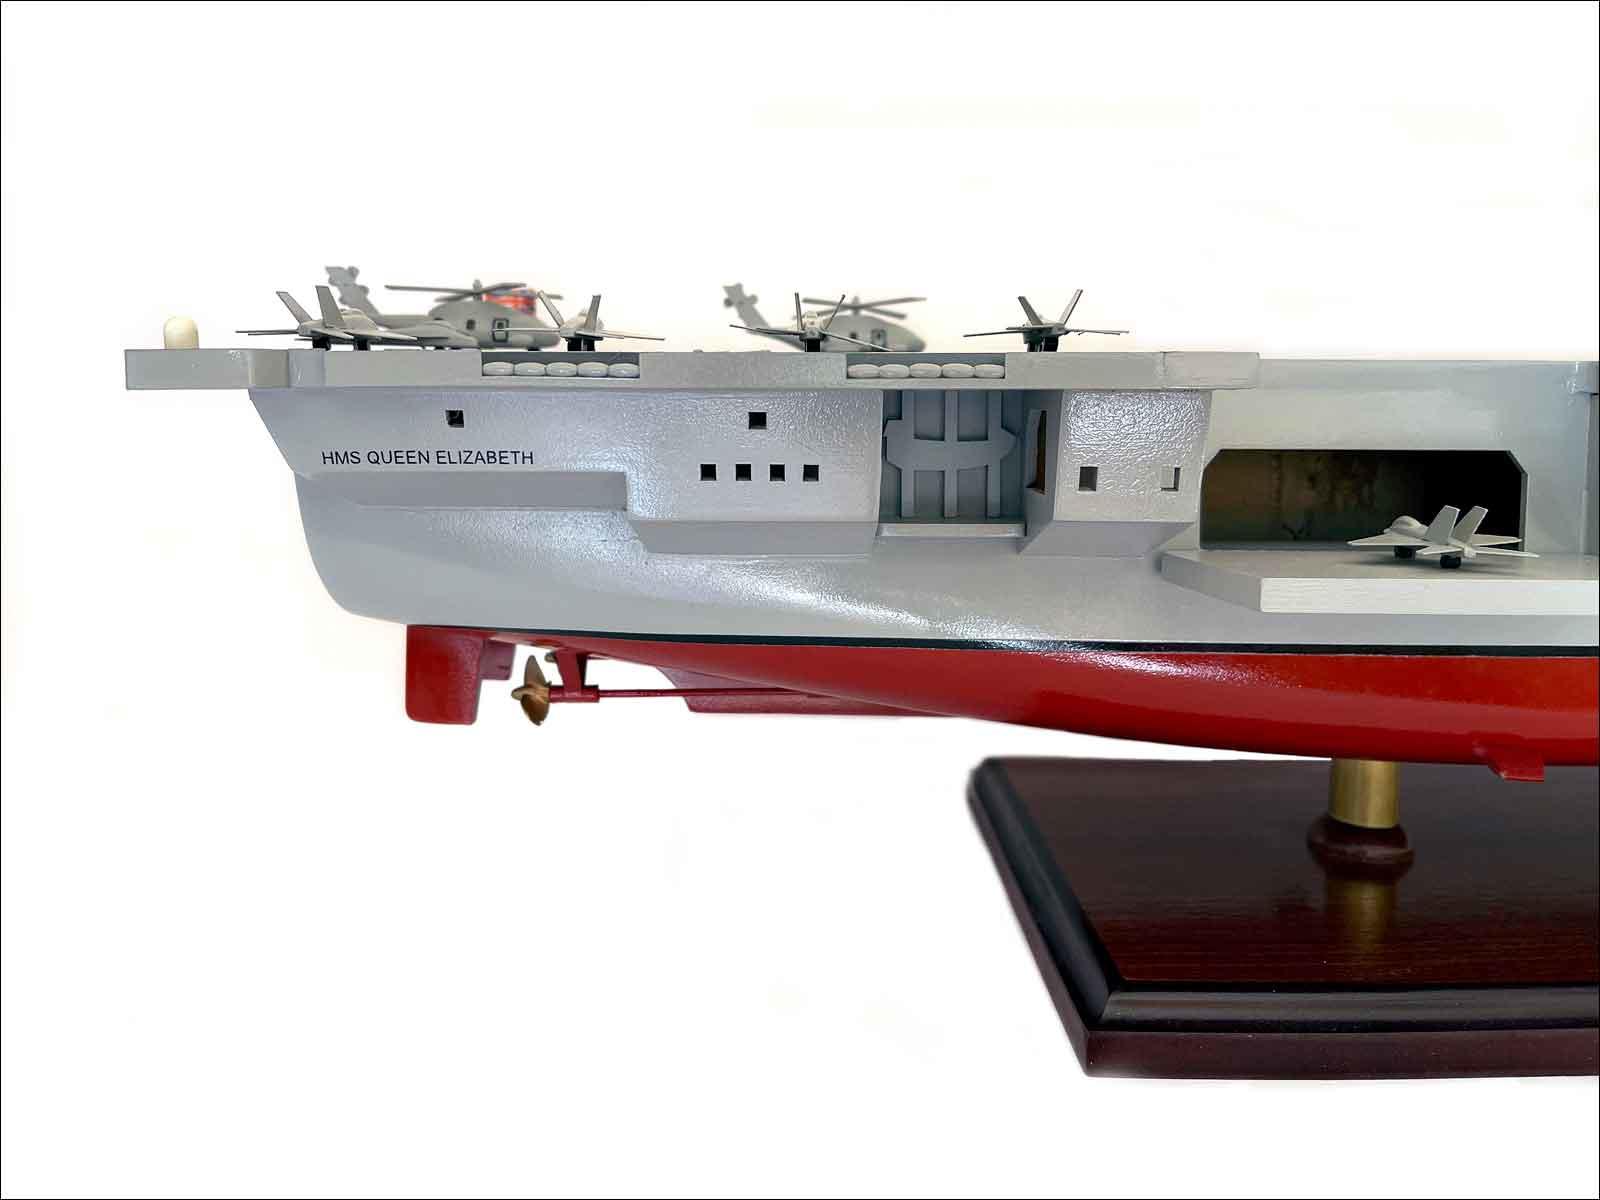 modern battleship model HMS Queen Elizabeth aircraft carrier